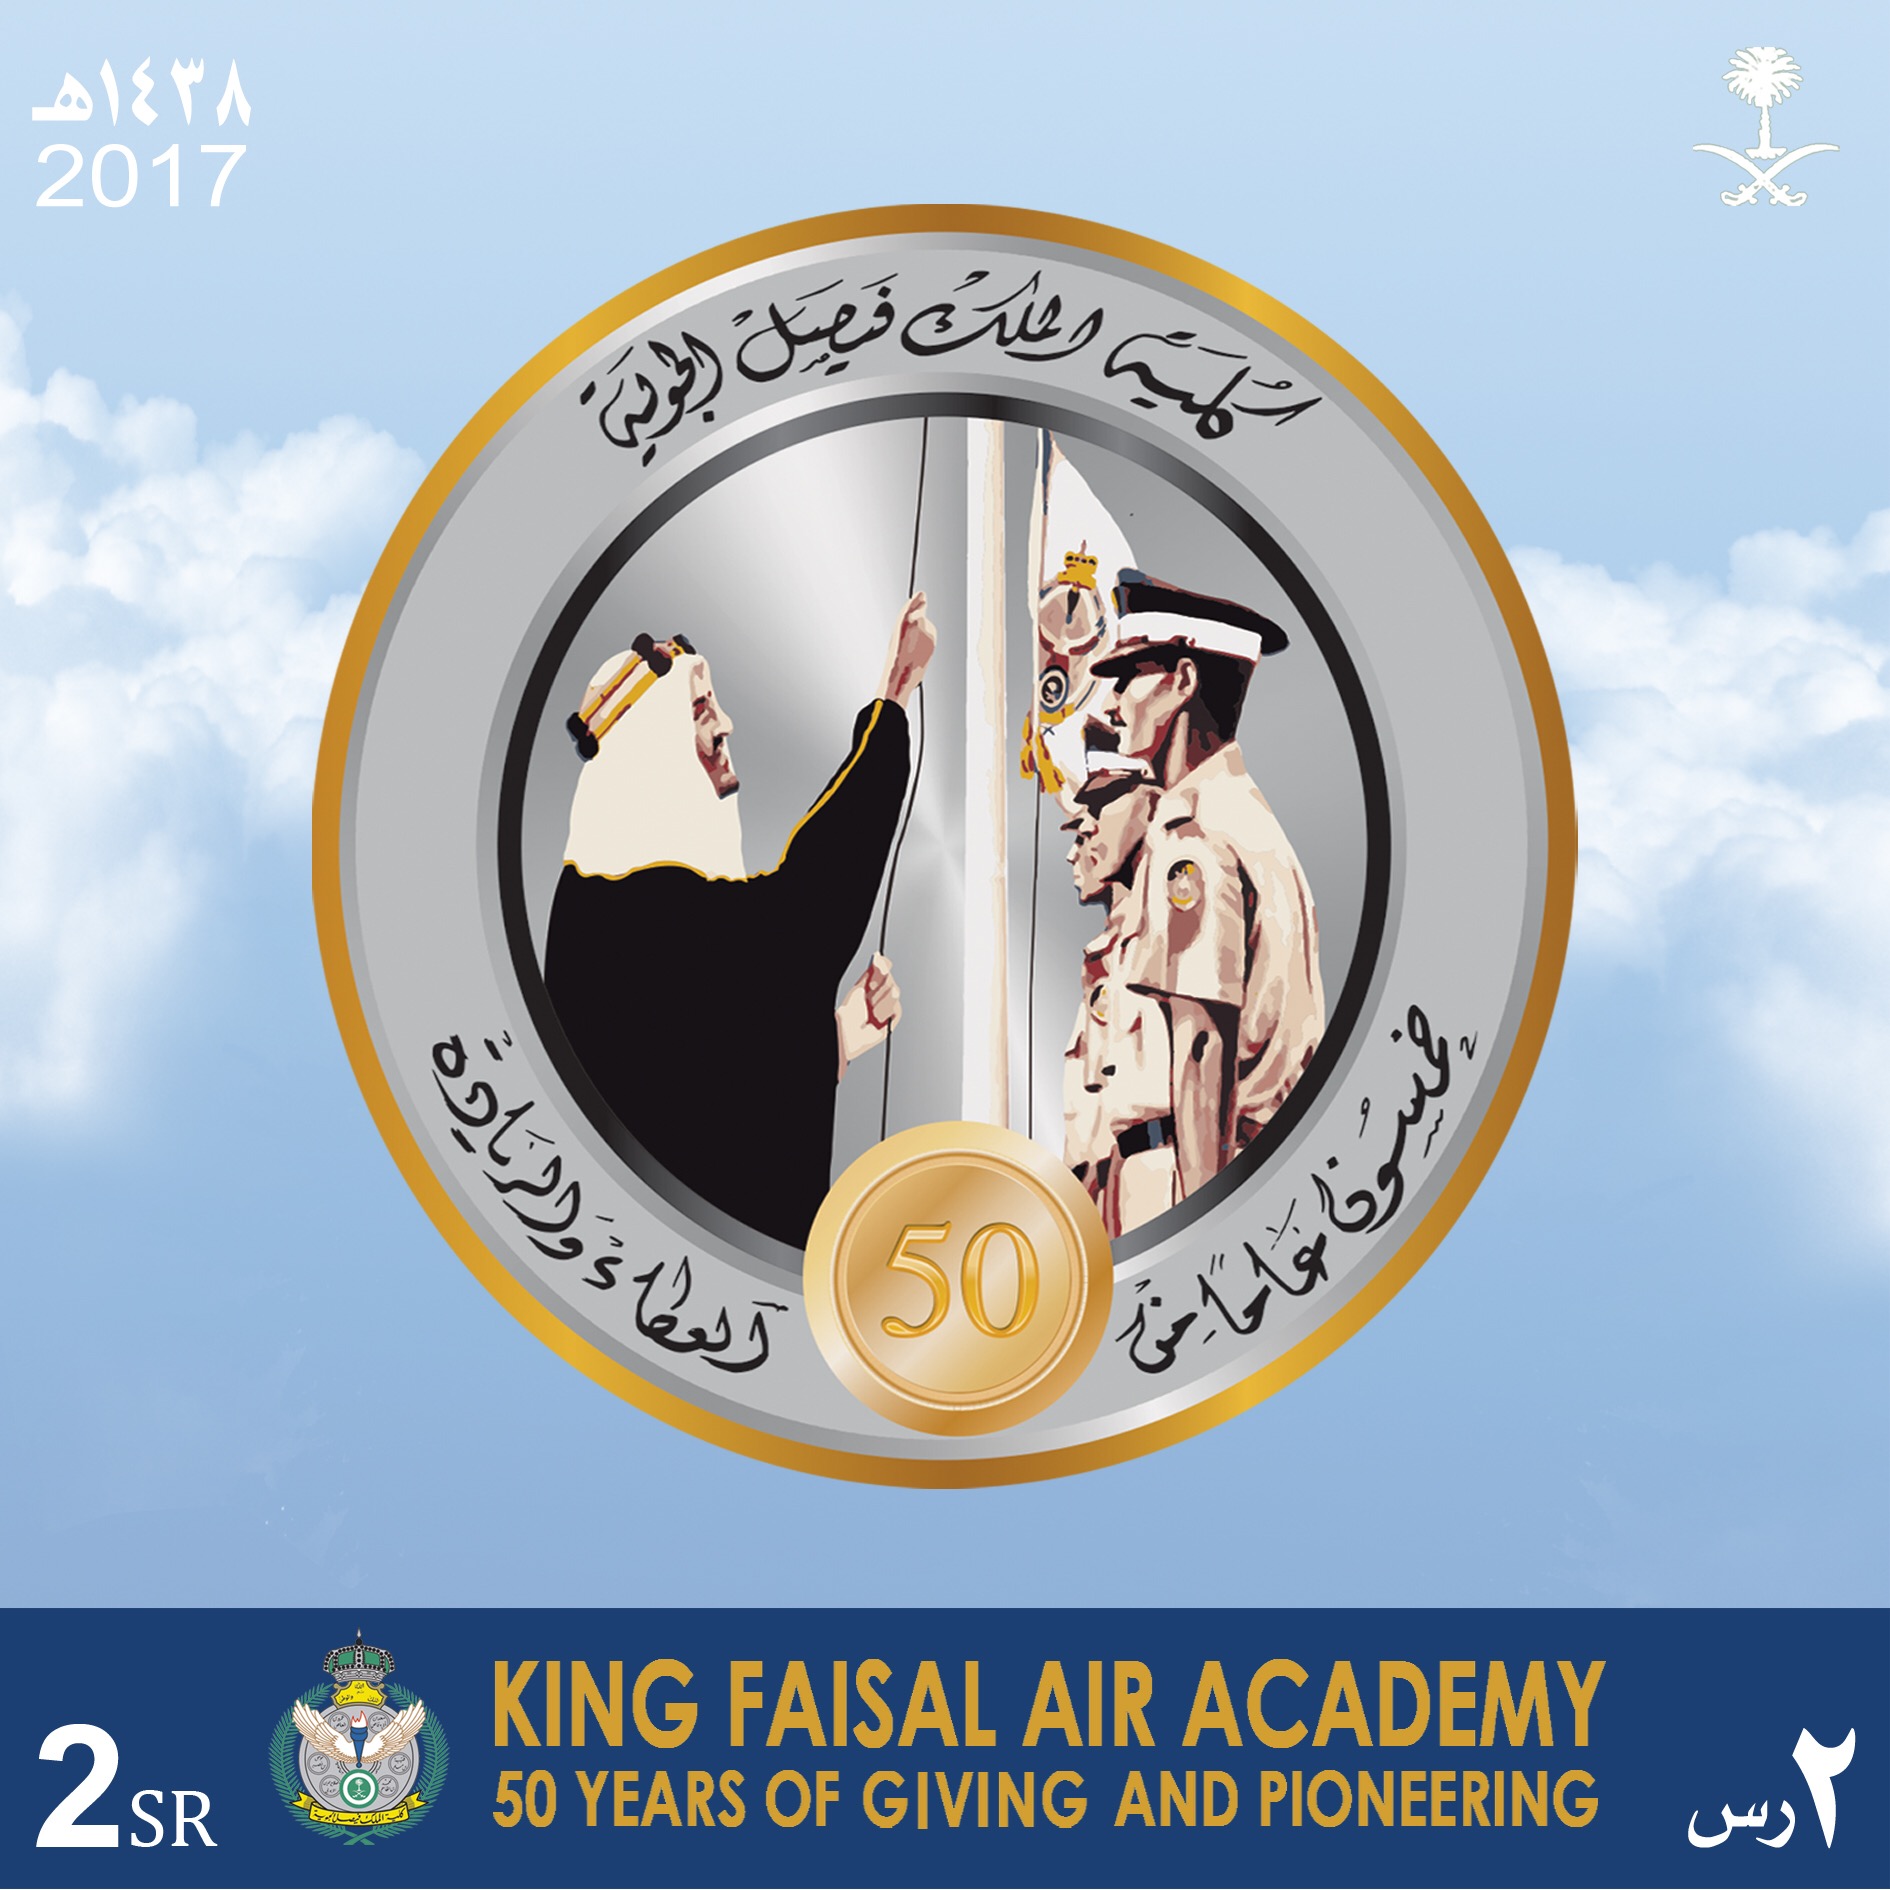 البريد السعودي يصدر طابعين تذكاريين لكلية الملك فيصل الجوية ويوم البريد العربي